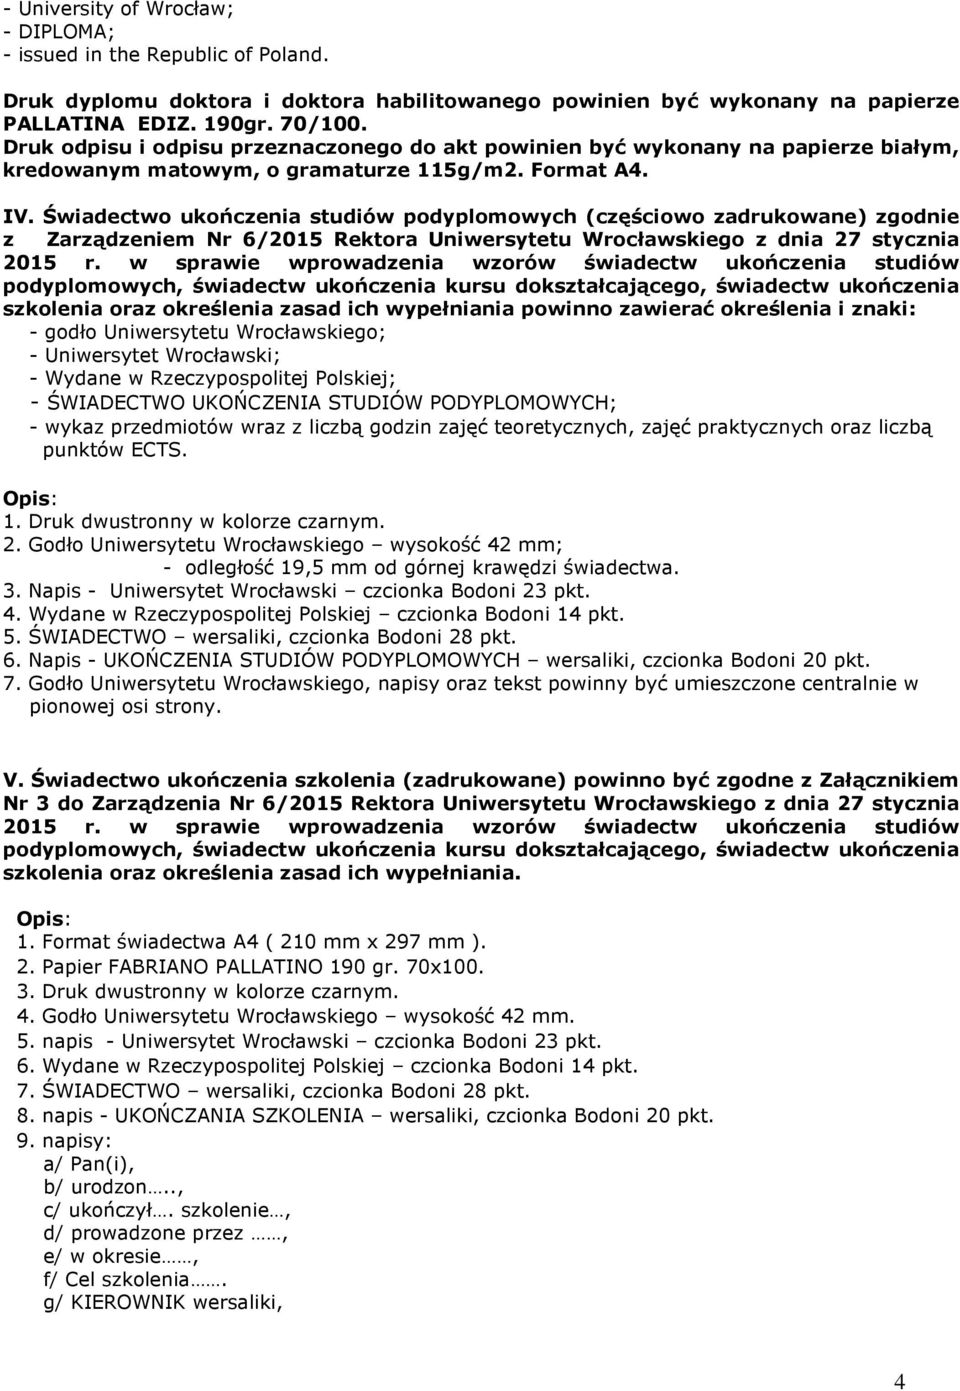 Świadectwo ukończenia studiów podyplomowych (częściowo zadrukowane) zgodnie z Zarządzeniem Nr 6/2015 Rektora Uniwersytetu Wrocławskiego z dnia 27 stycznia 2015 r.